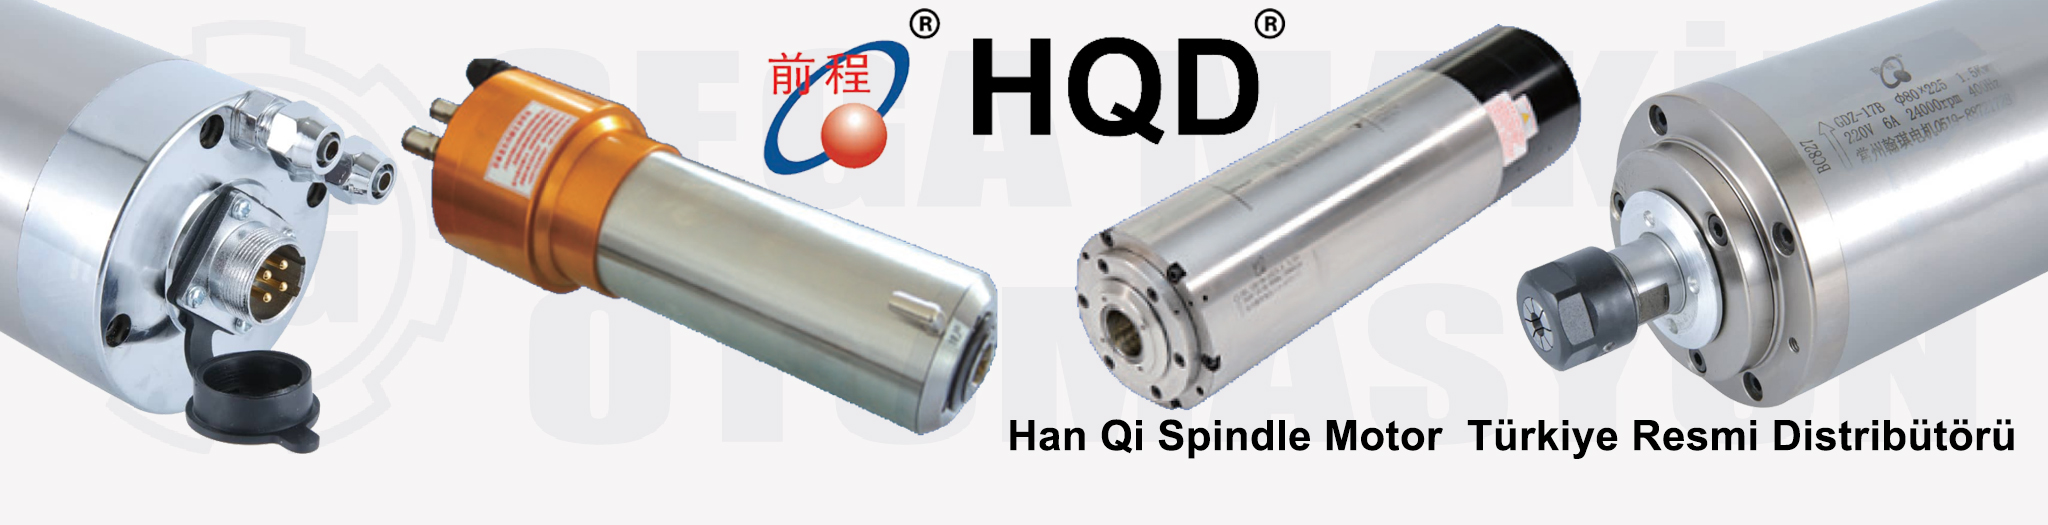 HQD Han Qi Spindle Motor Türkiye Distribütörü